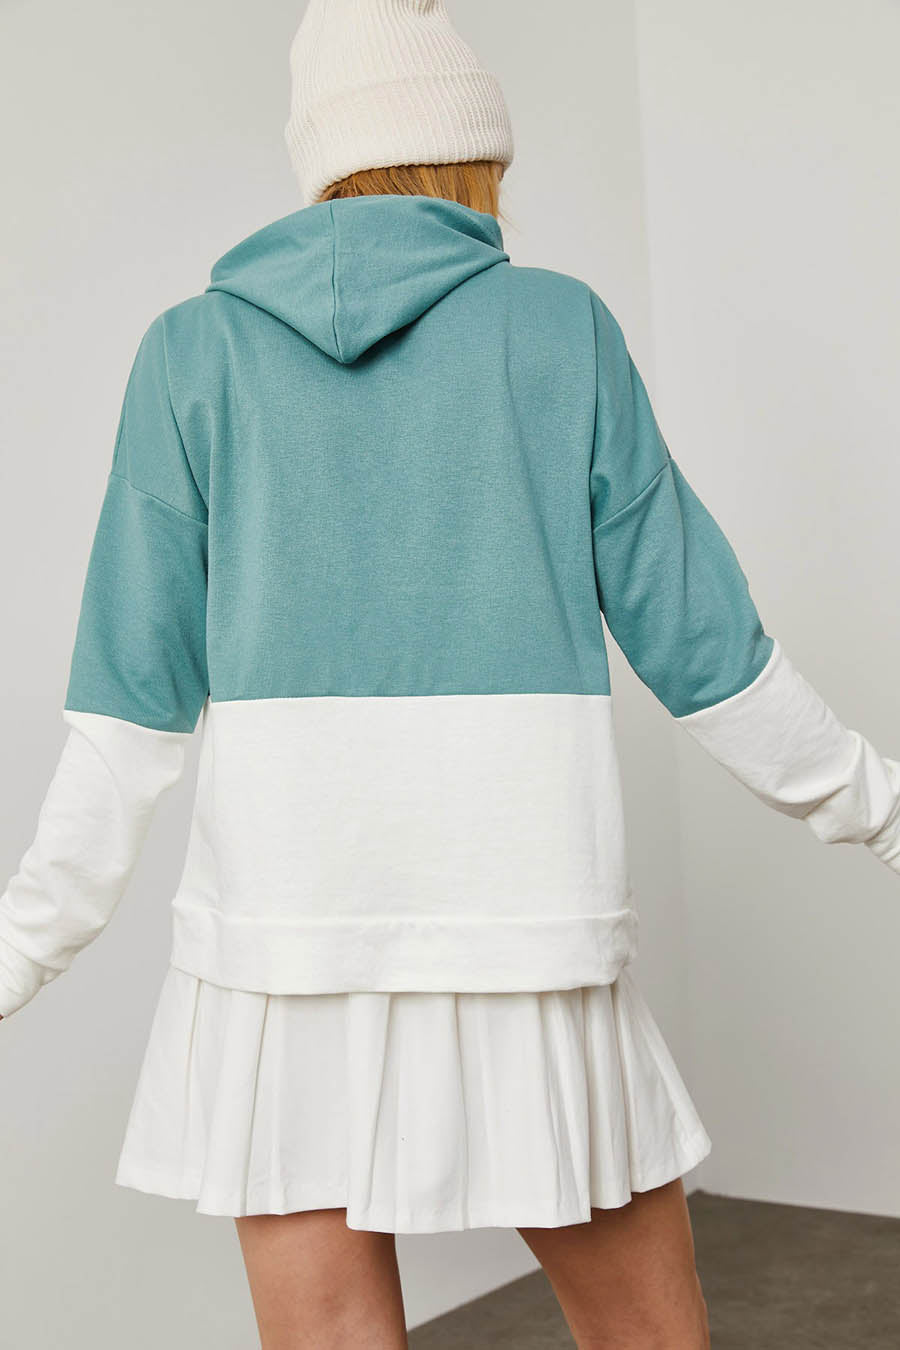 Γυναικείο φούτερ με κουκούλα Mailyn, Πράσινο/Λευκό 6